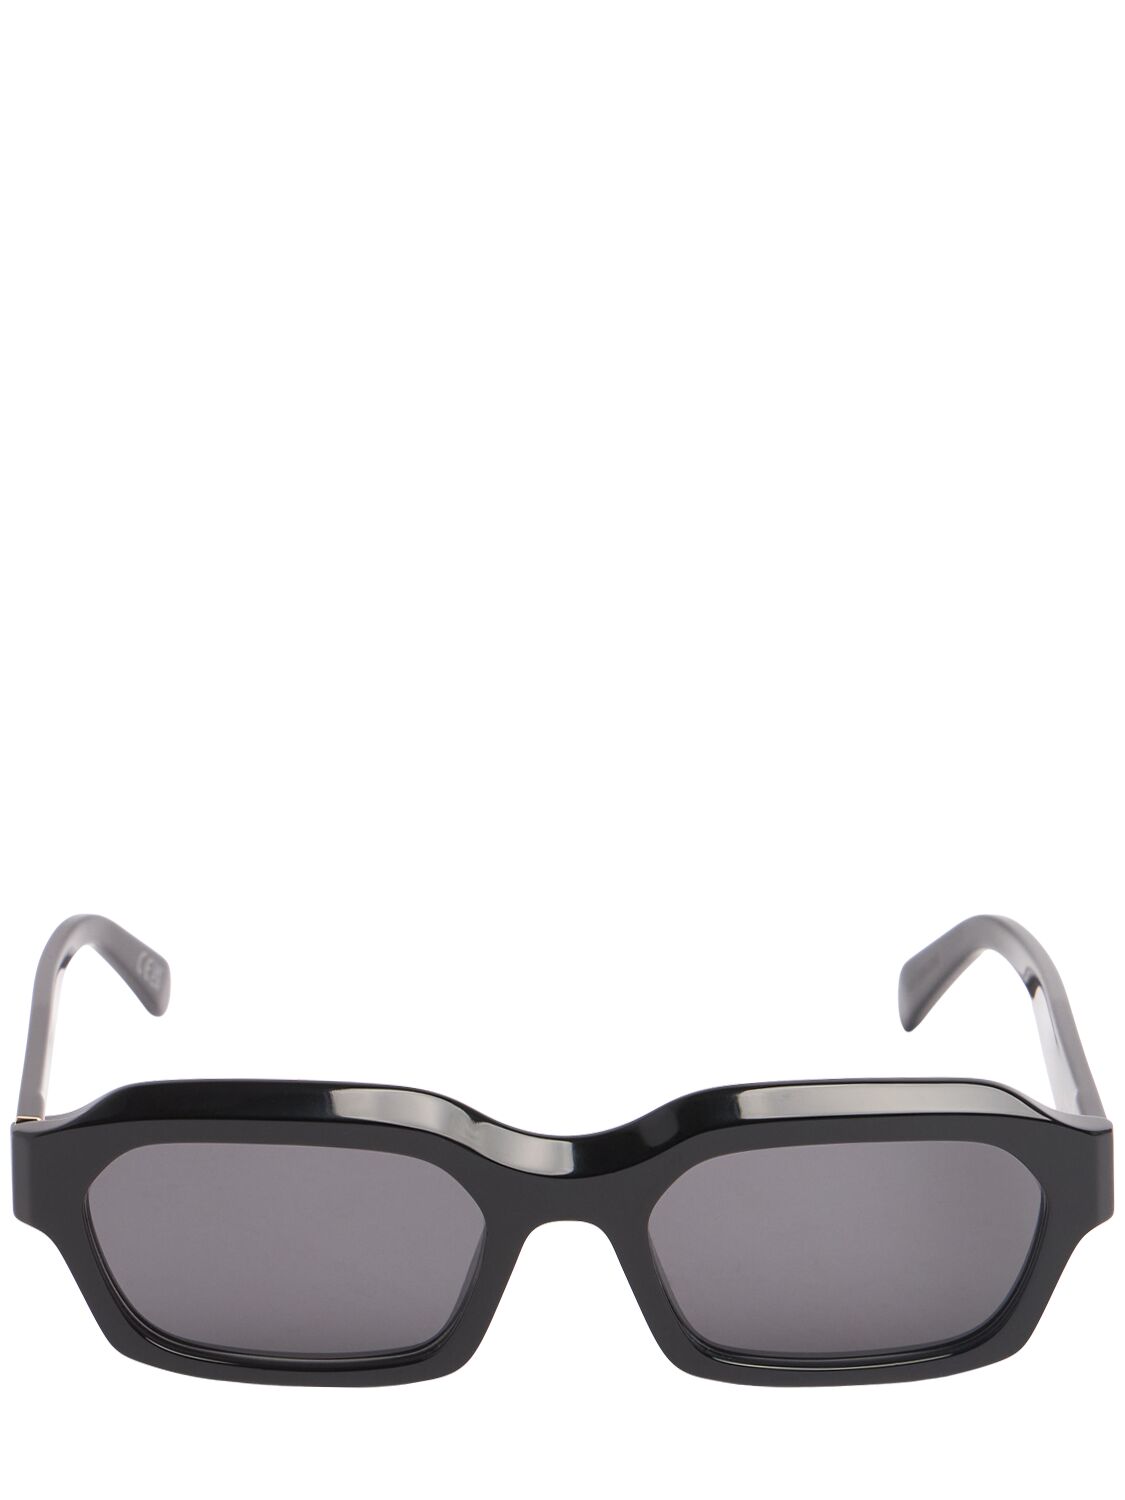 Boletus Squared Black Acetate Sunglasses